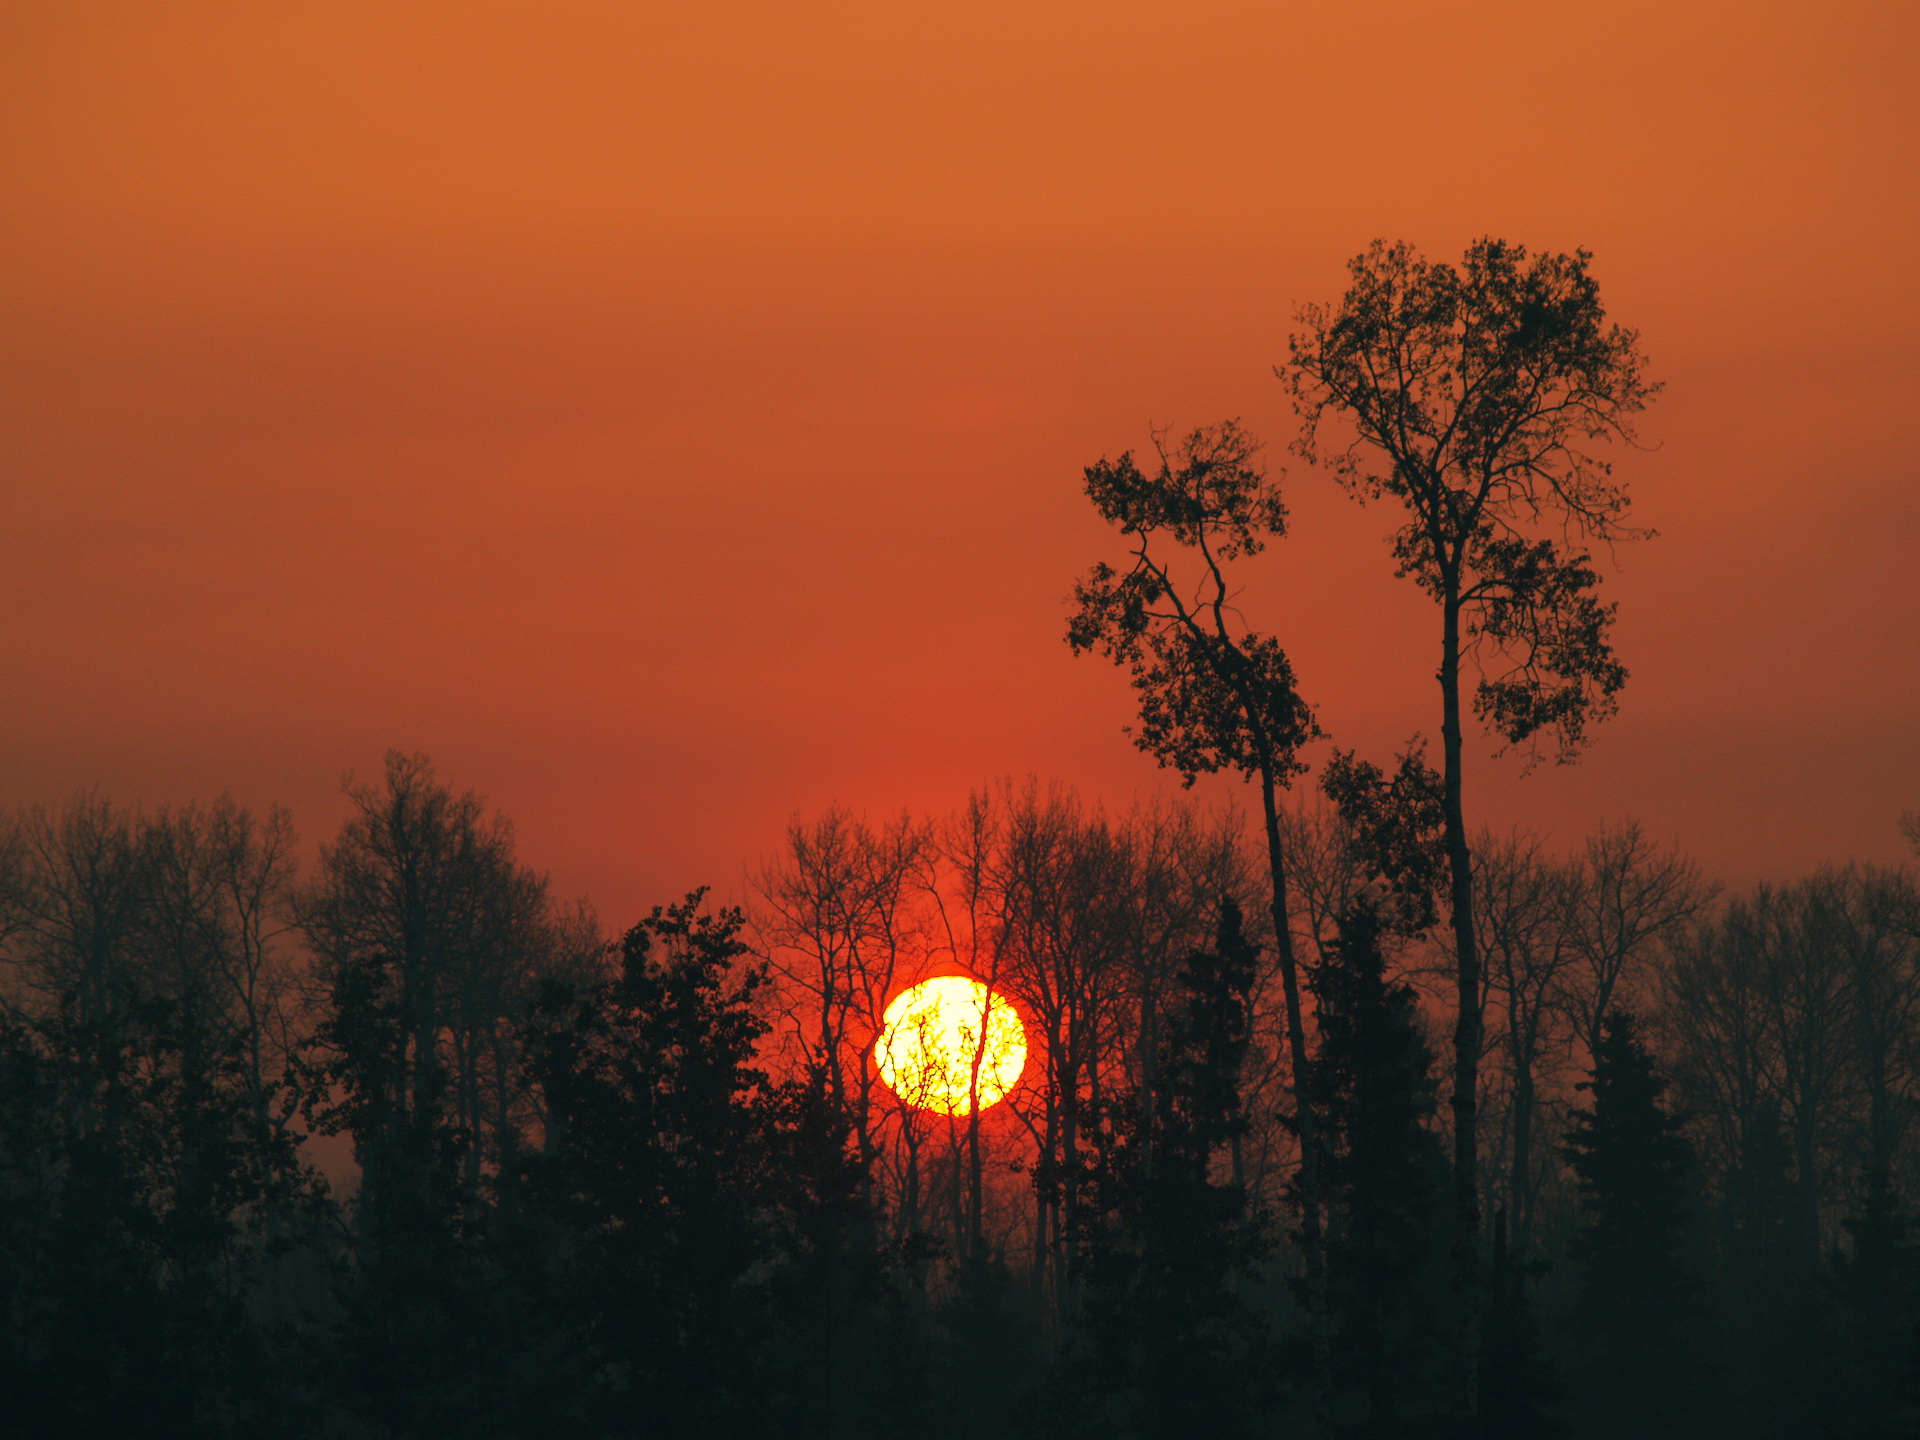 природа деревья солнце закат скачать